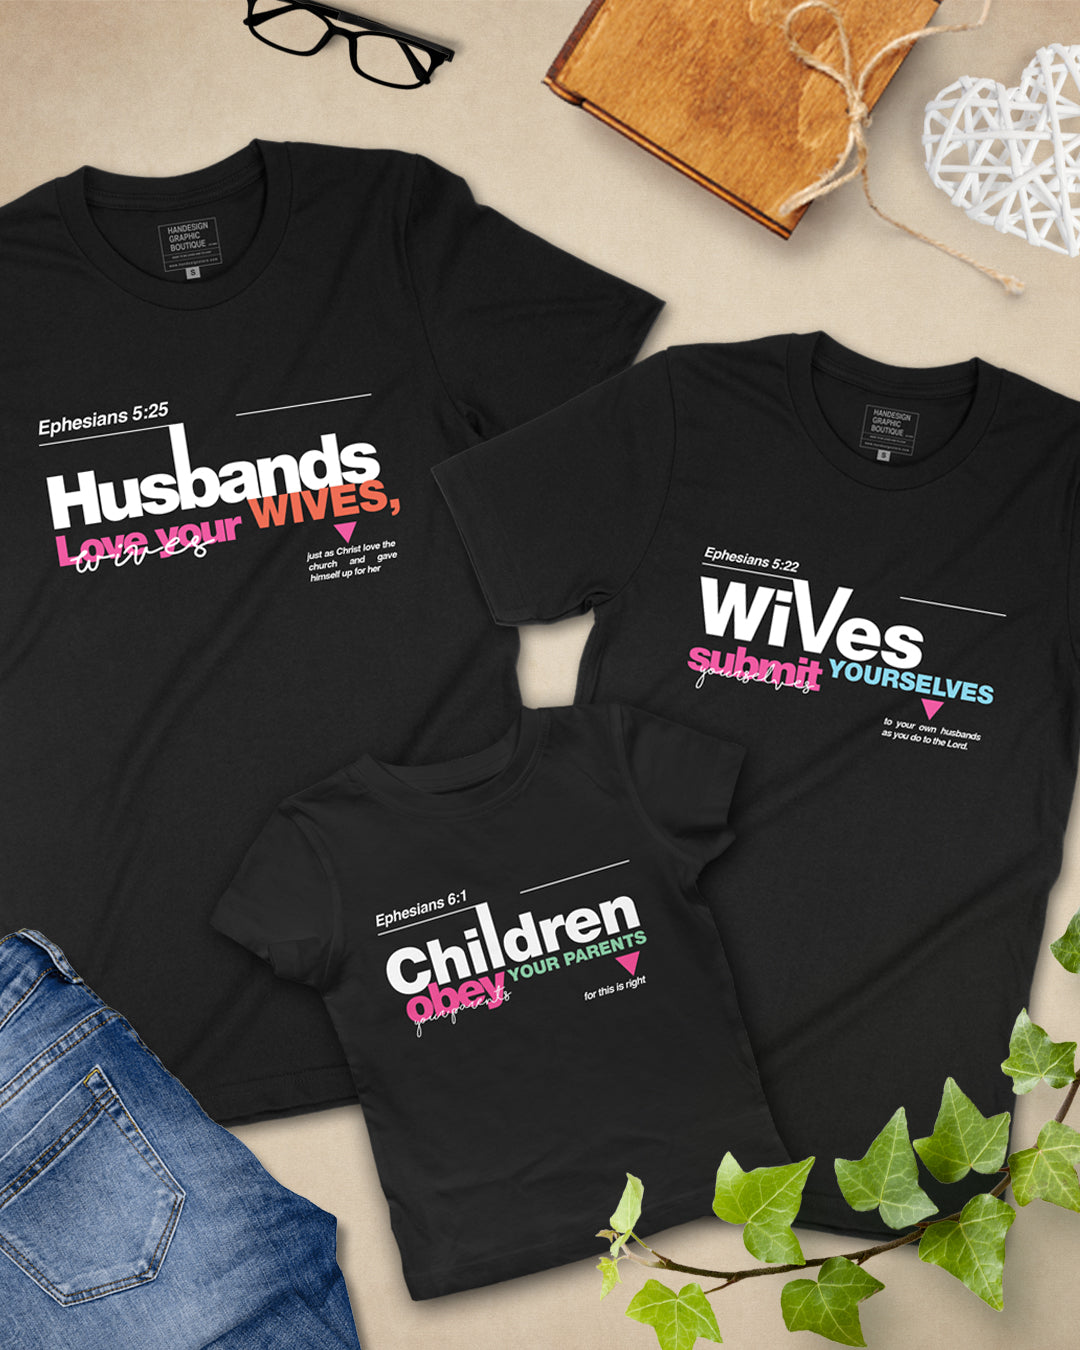 Husbands wives children